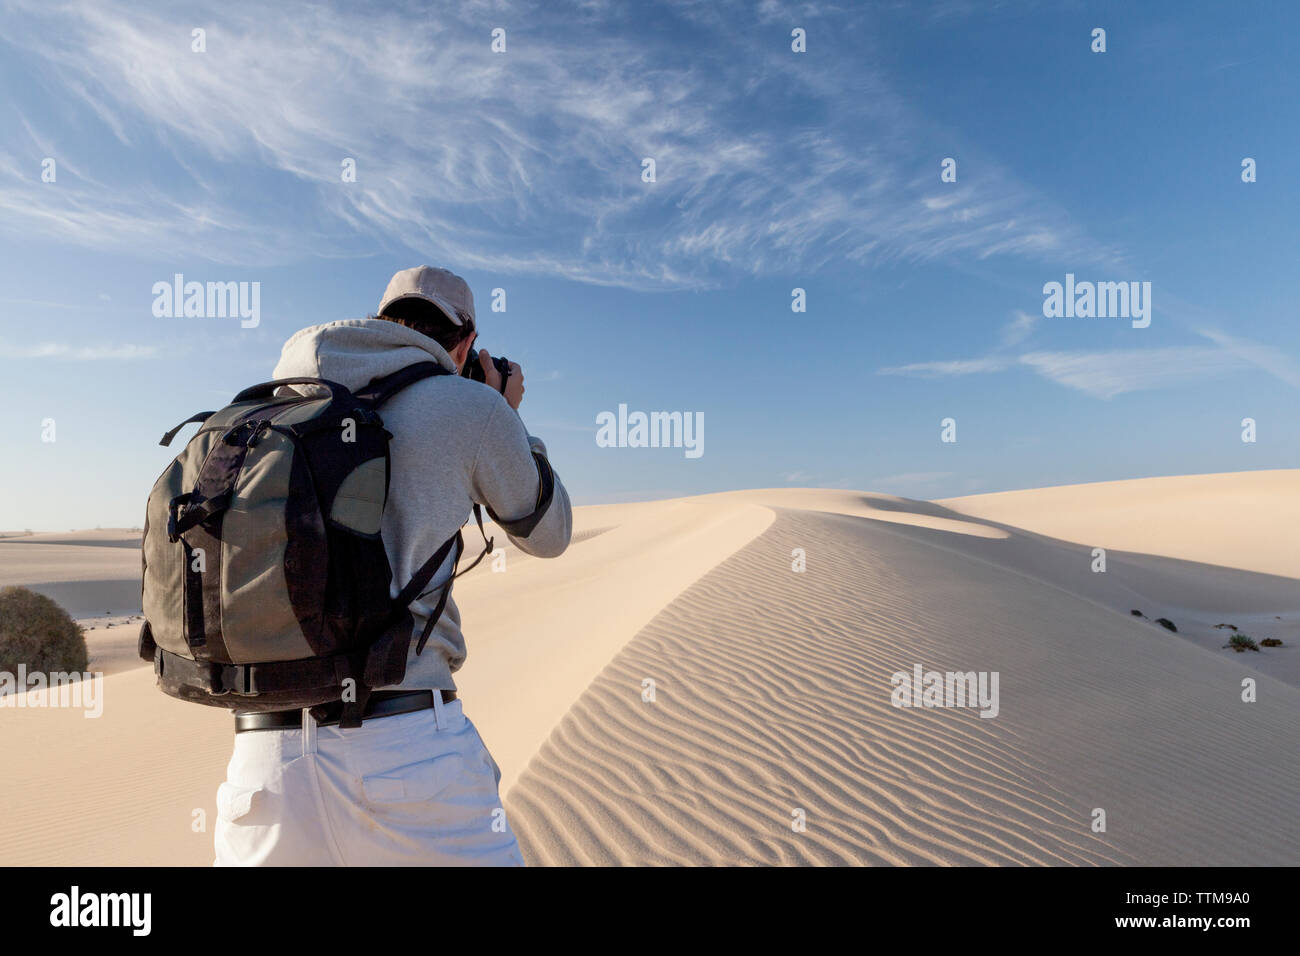 Entre 20 y 30 años de edad fotógrafo tomando fotos de dunas de arena de la isla de Fuerteventura. Foto de stock